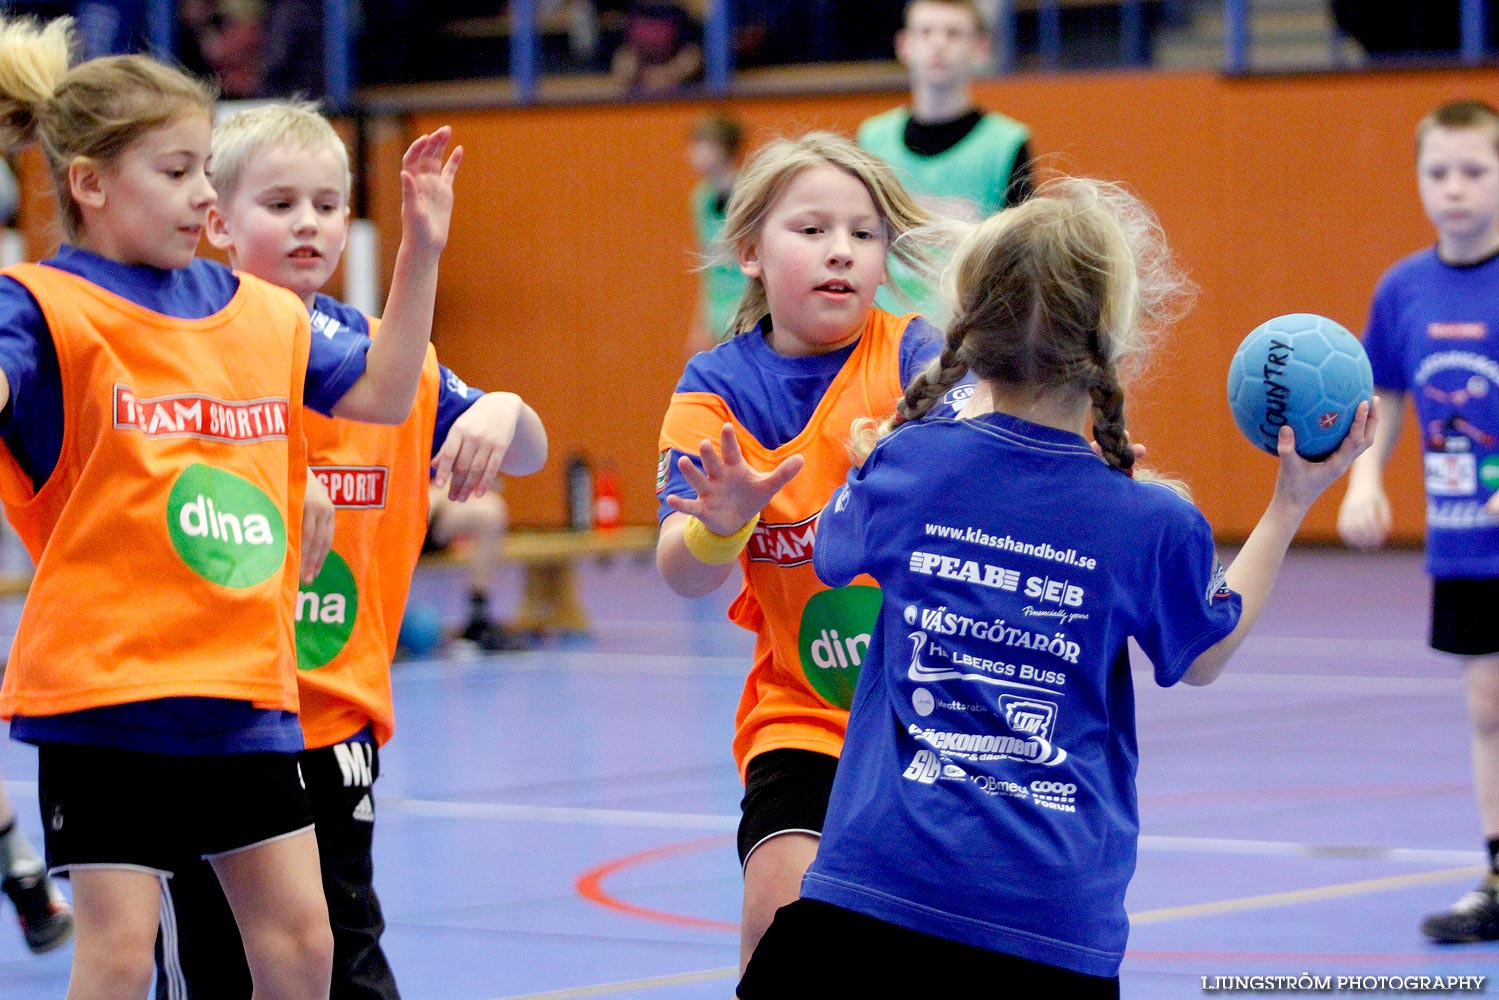 Klasshandboll Skövde 2012 Åldersklass 2003,mix,Arena Skövde,Skövde,Sverige,Handboll,,2012,46855